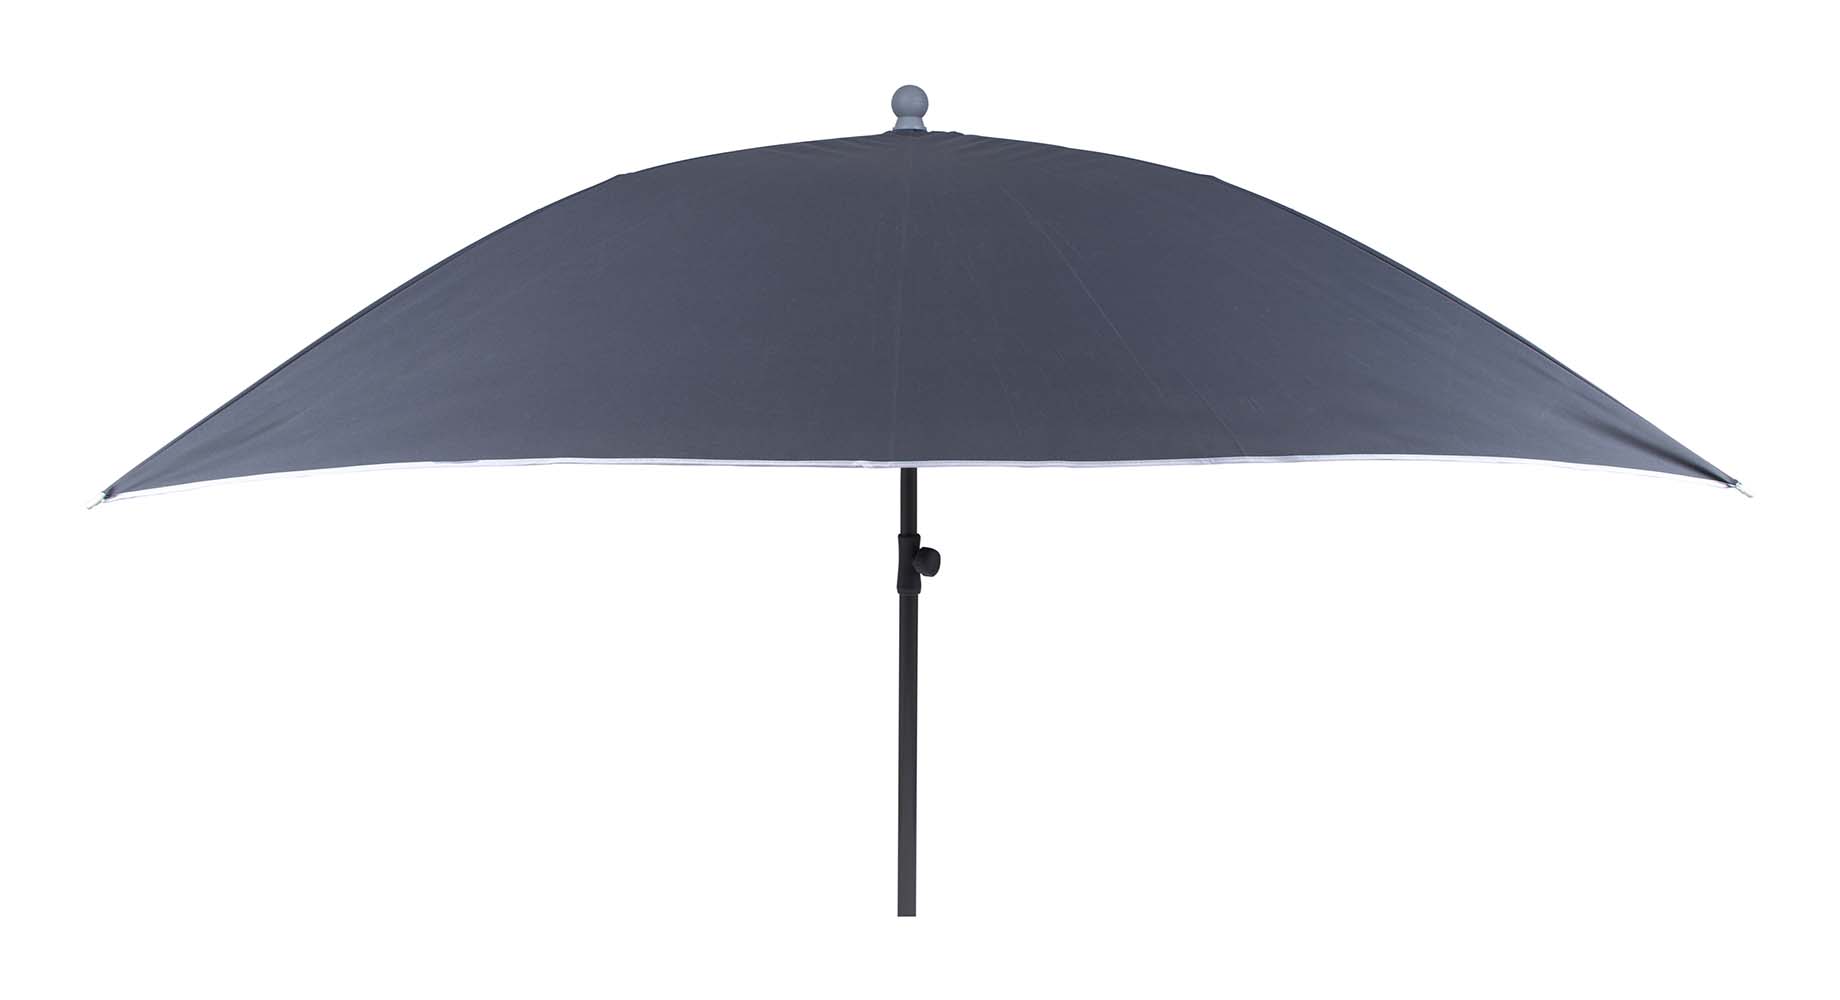 7267290 Een stevige vierkante parasol. Inclusief in hoogte verstelbare stalen steel voor in het zand, in een parasolvoet of in een tafelopening. Ideaal voor op het strand, op de camping of in de tuin. Voorzien van een stevig 160 gr/m² polyester doek. Bovendien zeer gemakkelijk mee te nemen (Ø 17x100 cm). De steel van de parasol heeft een diameter van 32 millimeter.